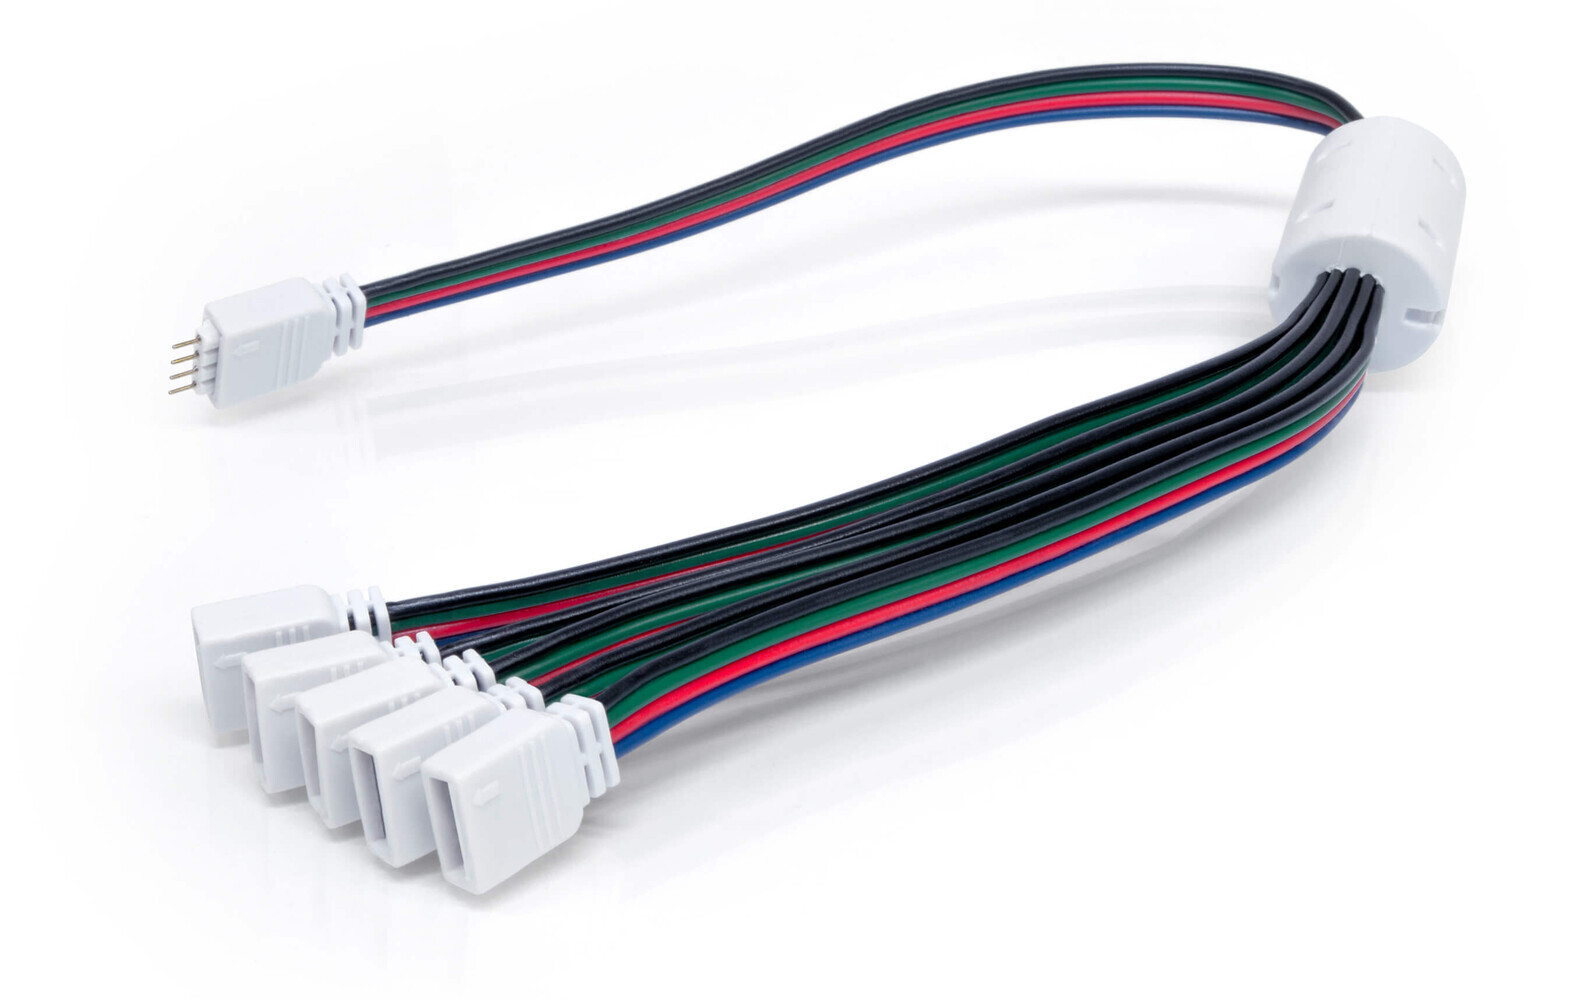 LED Streifen Verteiler von LED Universum - 4 pol led verteiler 1 zu 6 1 input stecker 6 outputs buchse für rgb led streifen